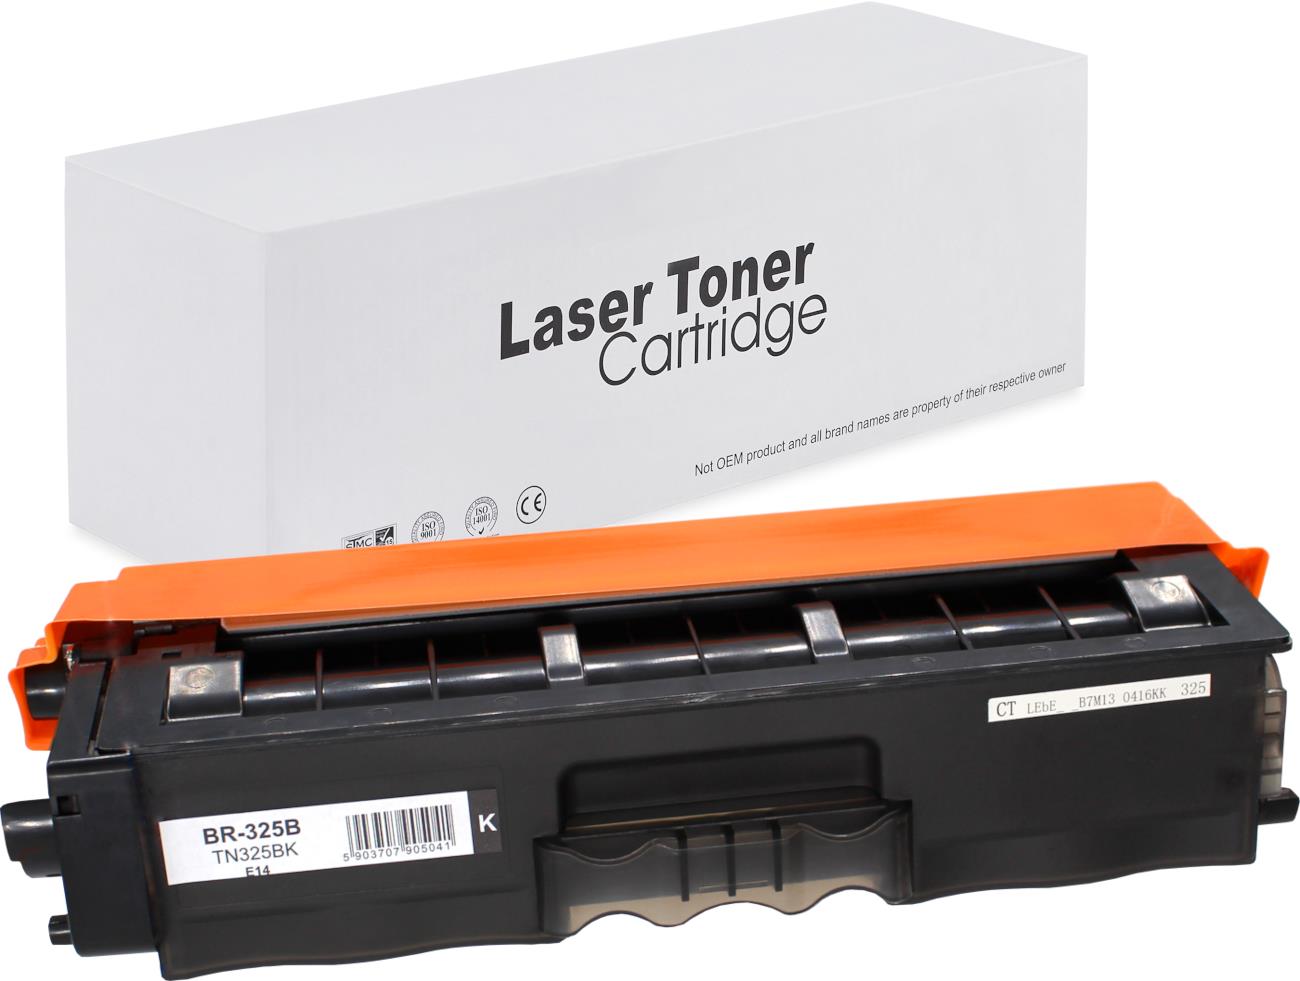 съвместима тонер касета за принтери и печатащи устройства на Brother HL-4570 CDW Toner BR-325B | TN325BK. Ниски цени, прецизно изпълнение, високо качество.